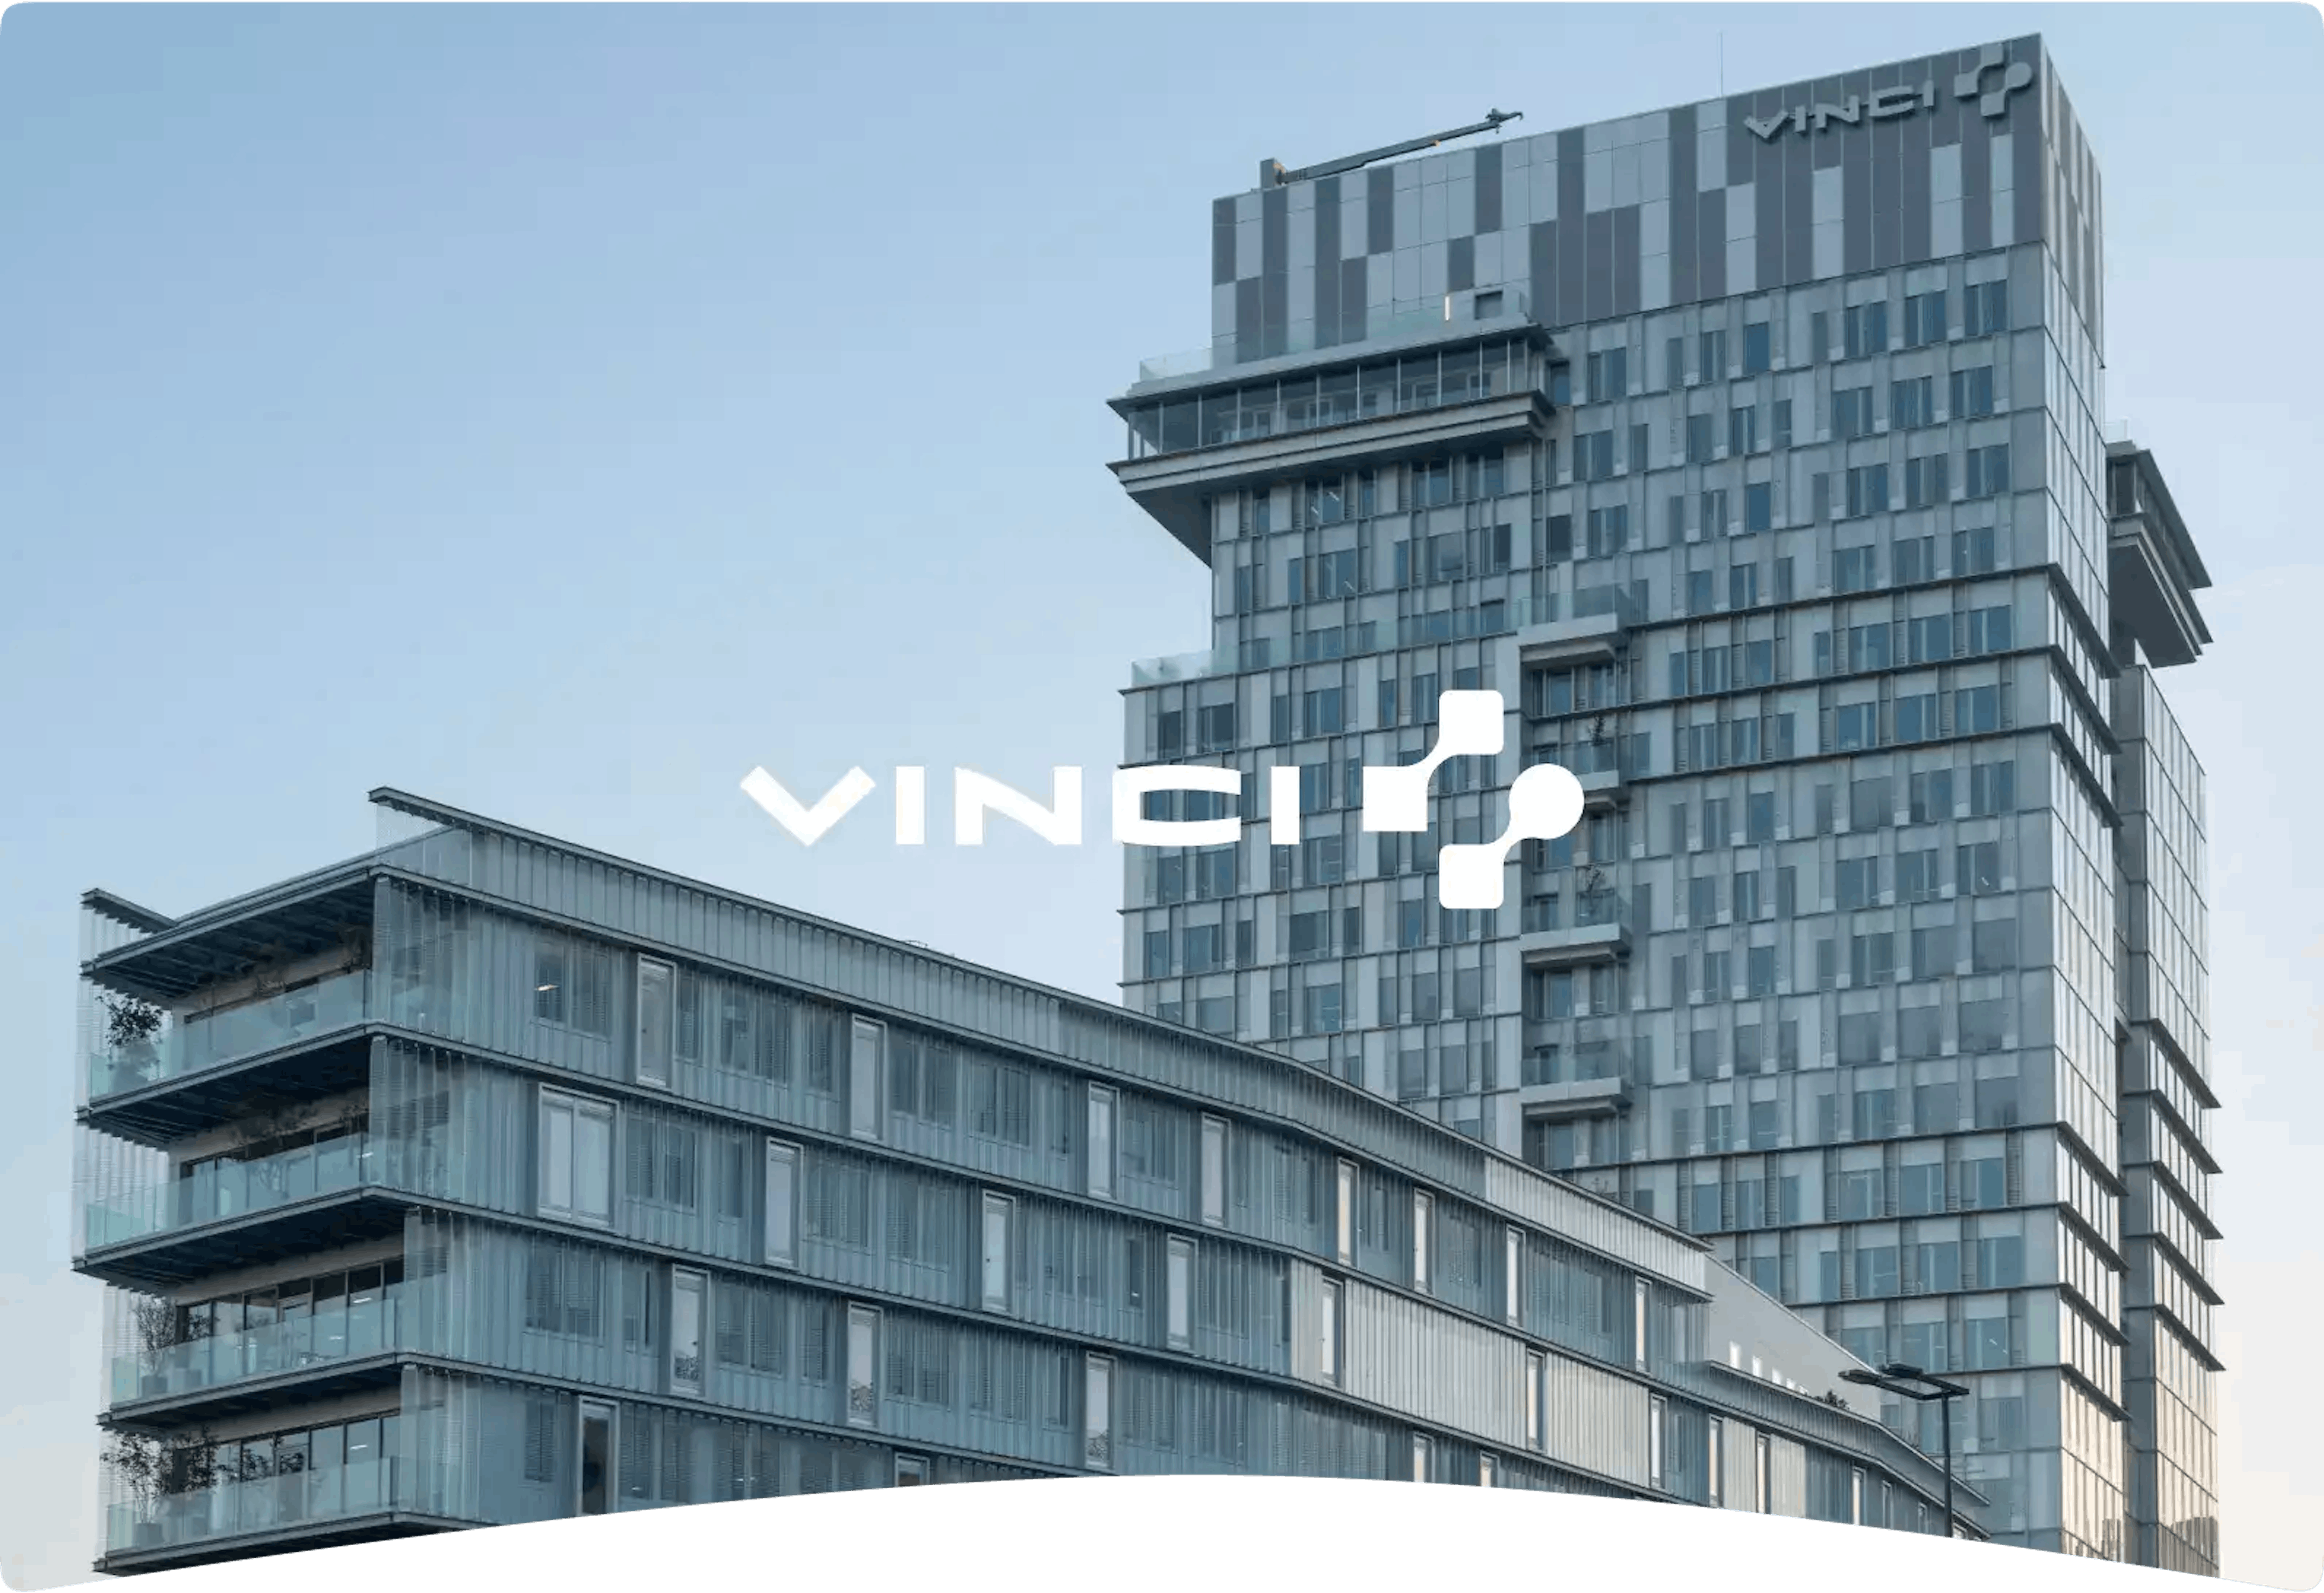 Vinci Immobilier Client Testimonial